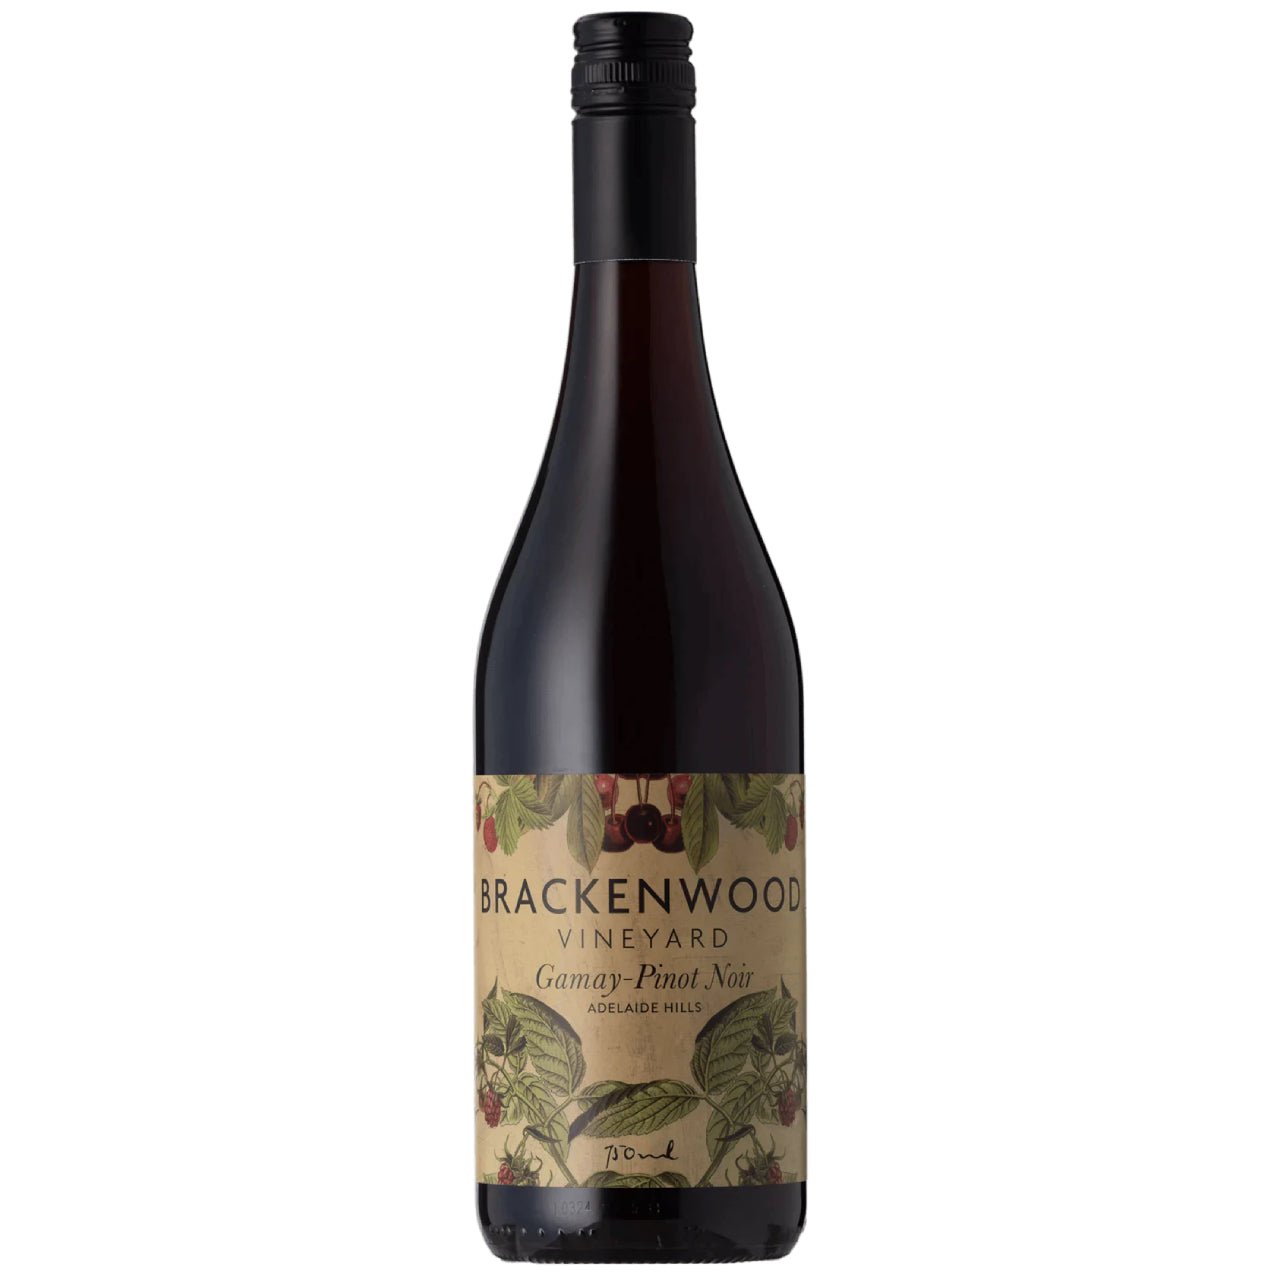 Brackenwood Gamay Pinot Noir 2022 - Wine Australia Red - Liquor Wine Cave